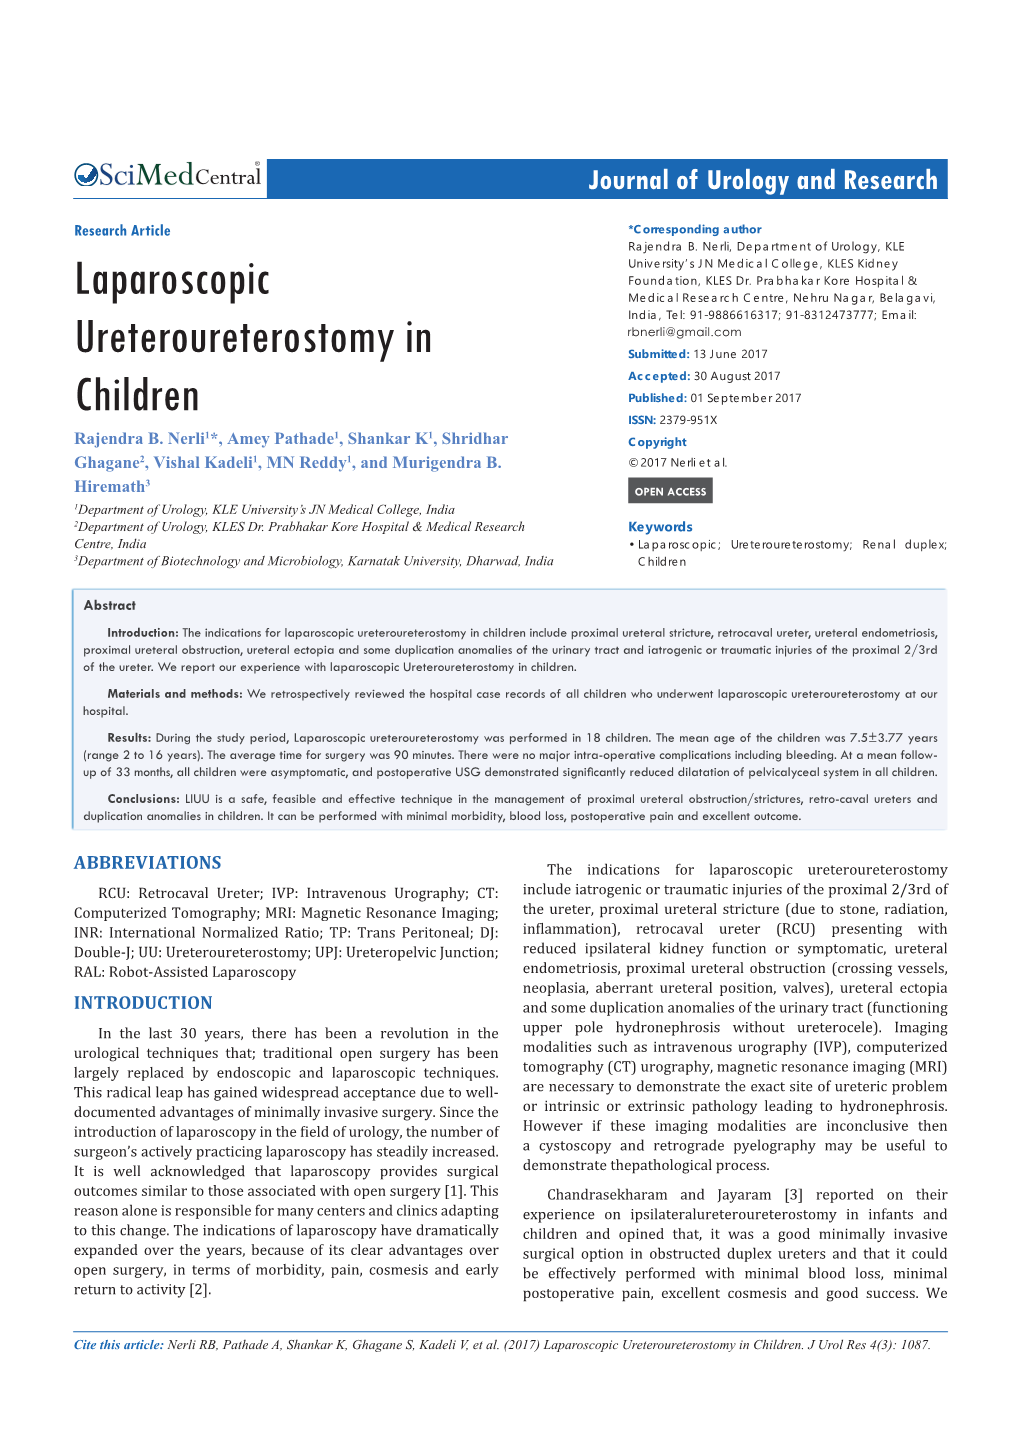 Laparoscopic Ureteroureterostomy in Children